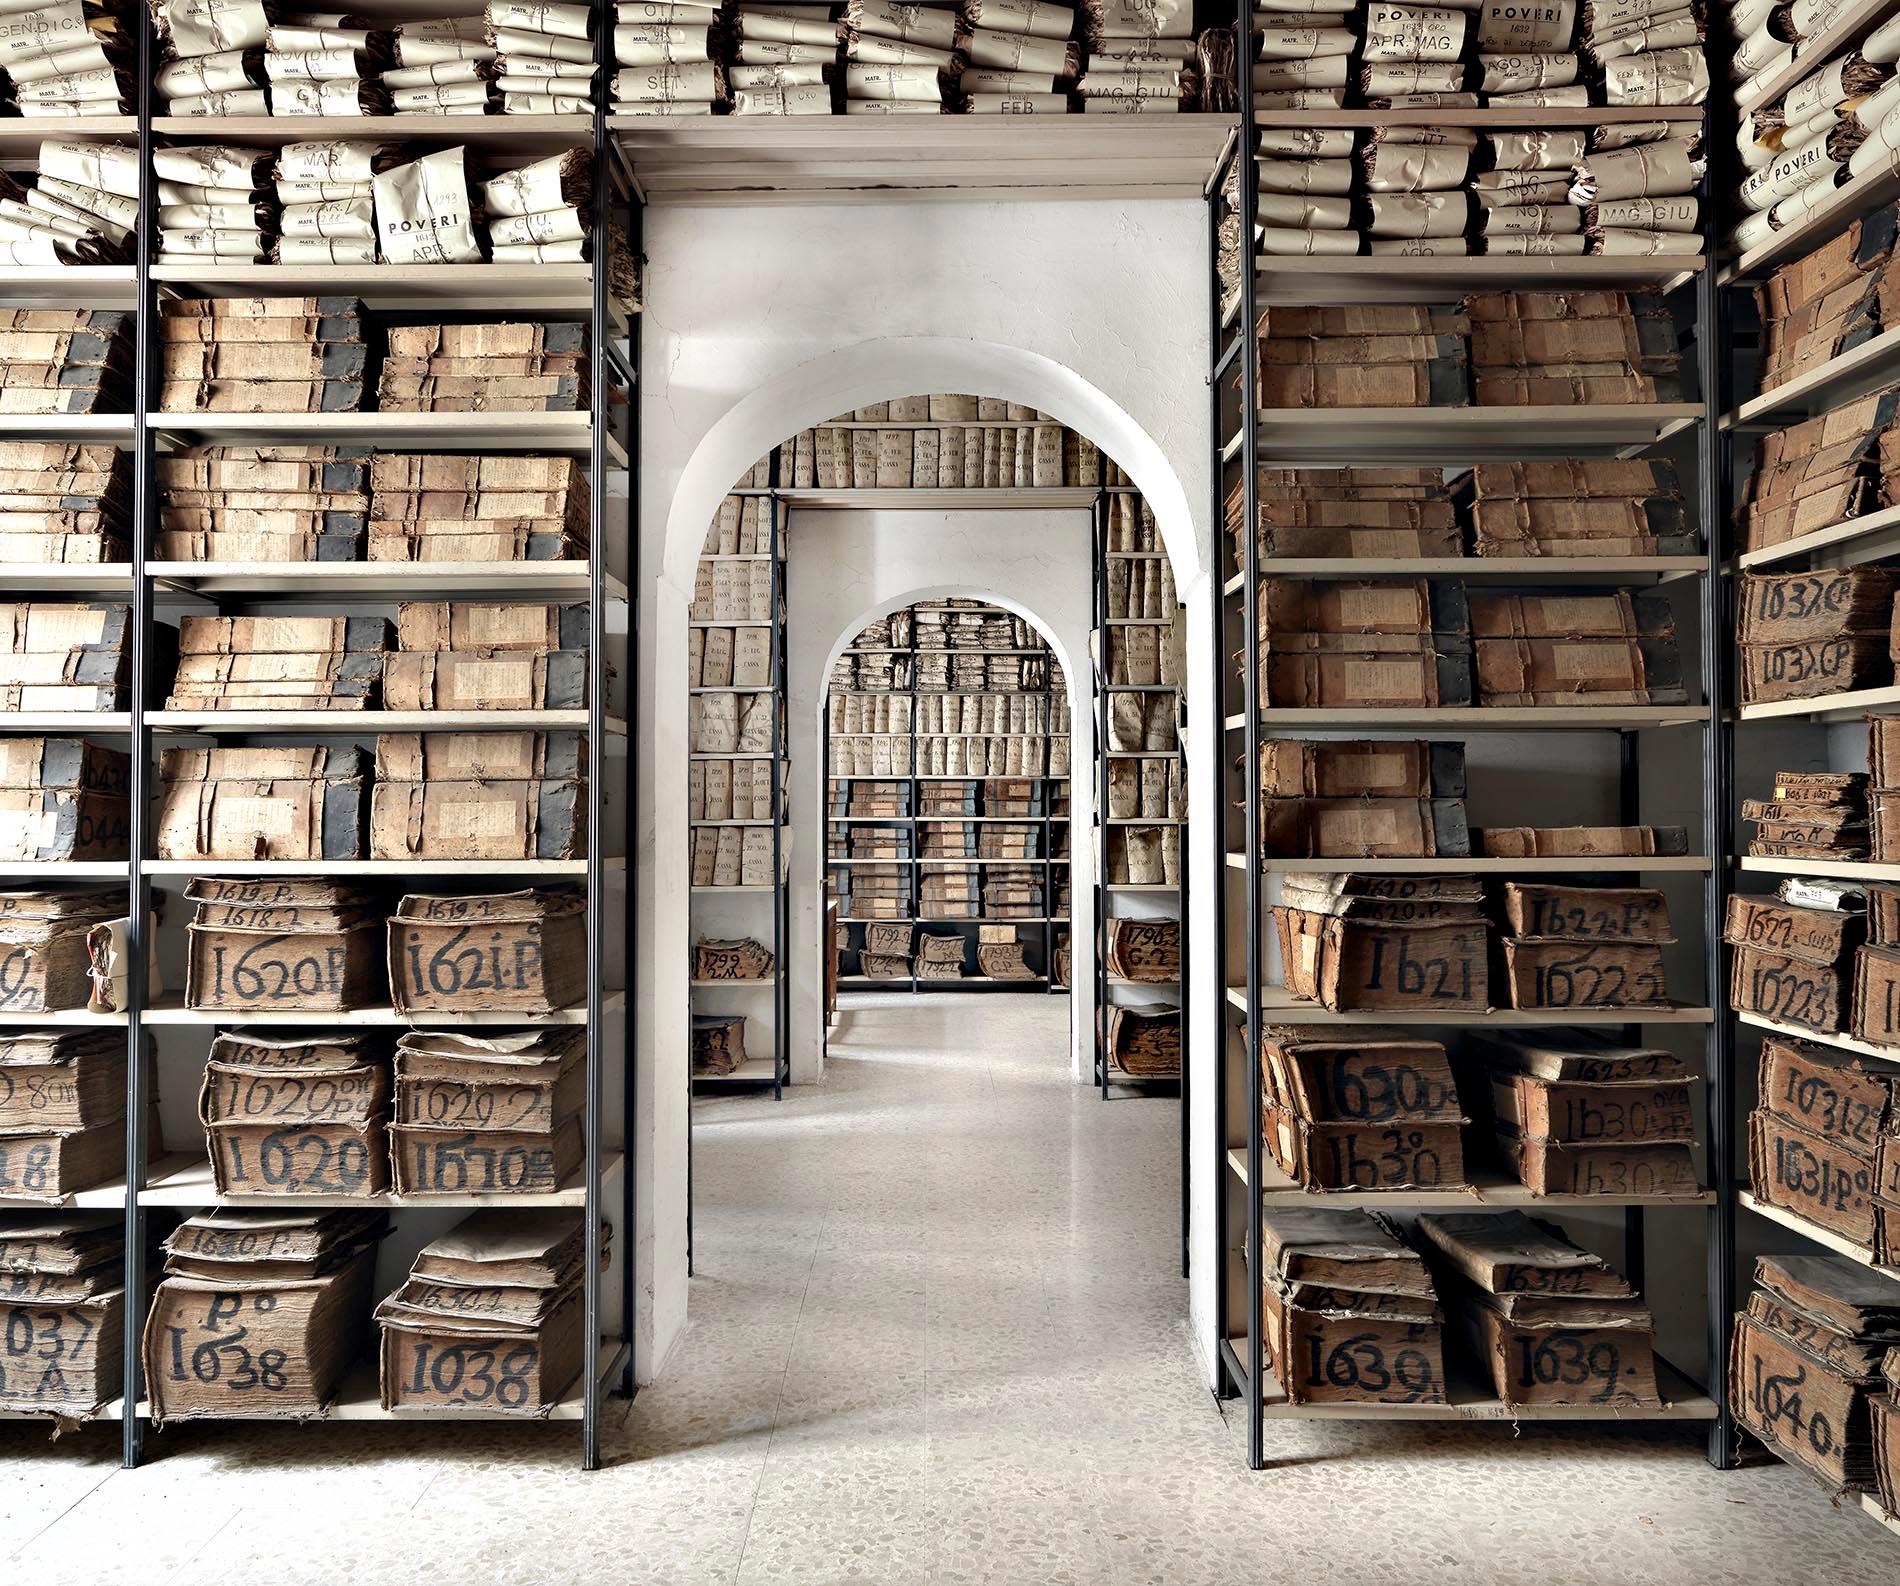 Massimo Listri Still-Life Photograph - Archivio Banco di Napoli I, Napoli 2013 - the inside of a library with books